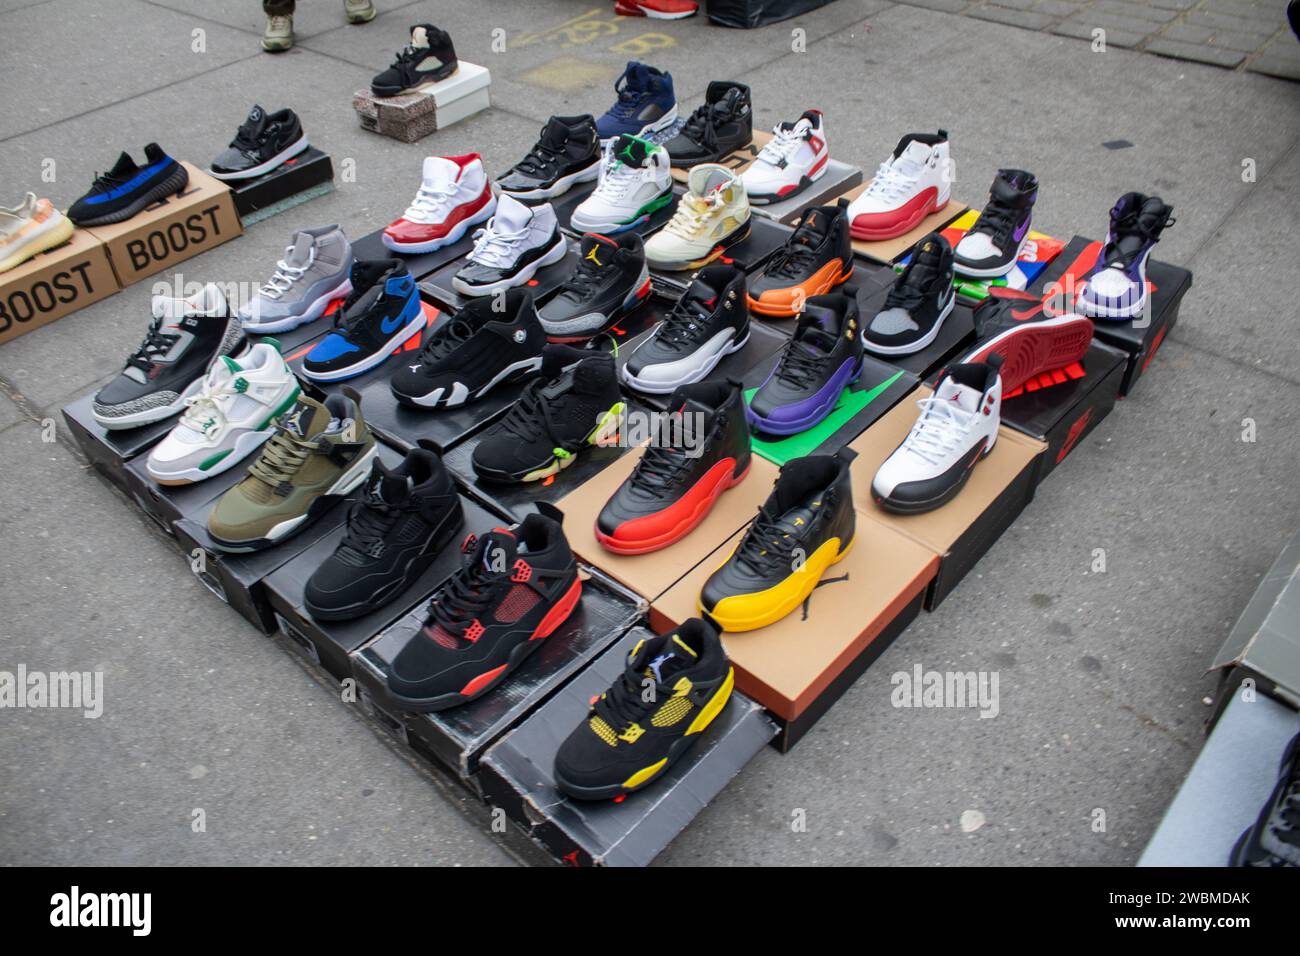 Una gamma di calzature assortite è esposta nelle scatole originali, creando un'accattivante esposizione di merchandising Foto Stock